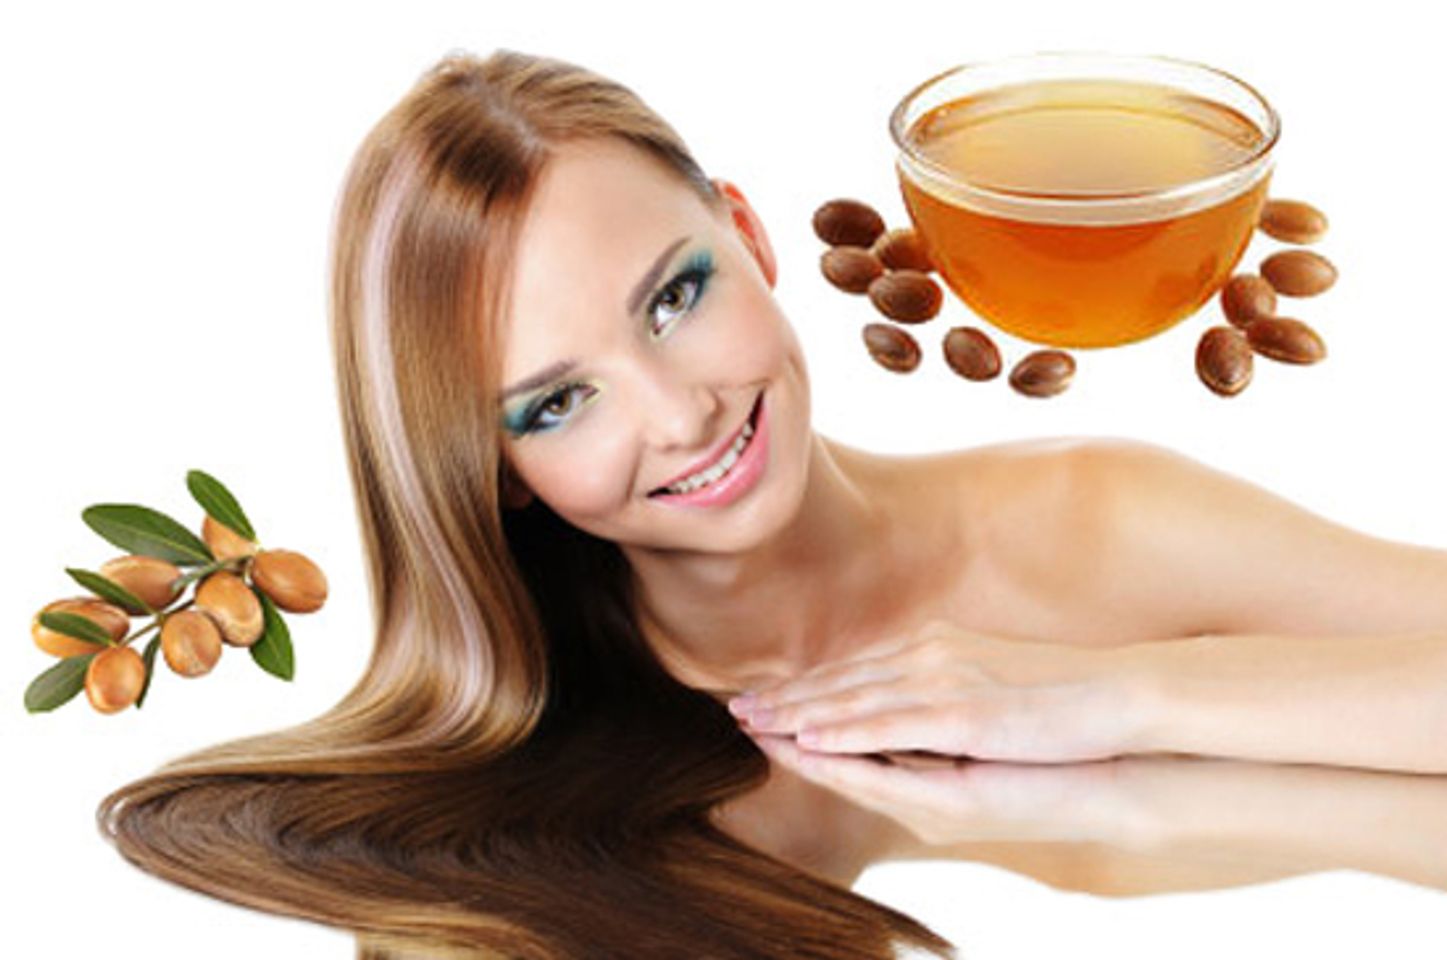 Tinh dầu Argan nguyên chất là giải pháp chăm sóc toàn diện nhất cho da và tóc